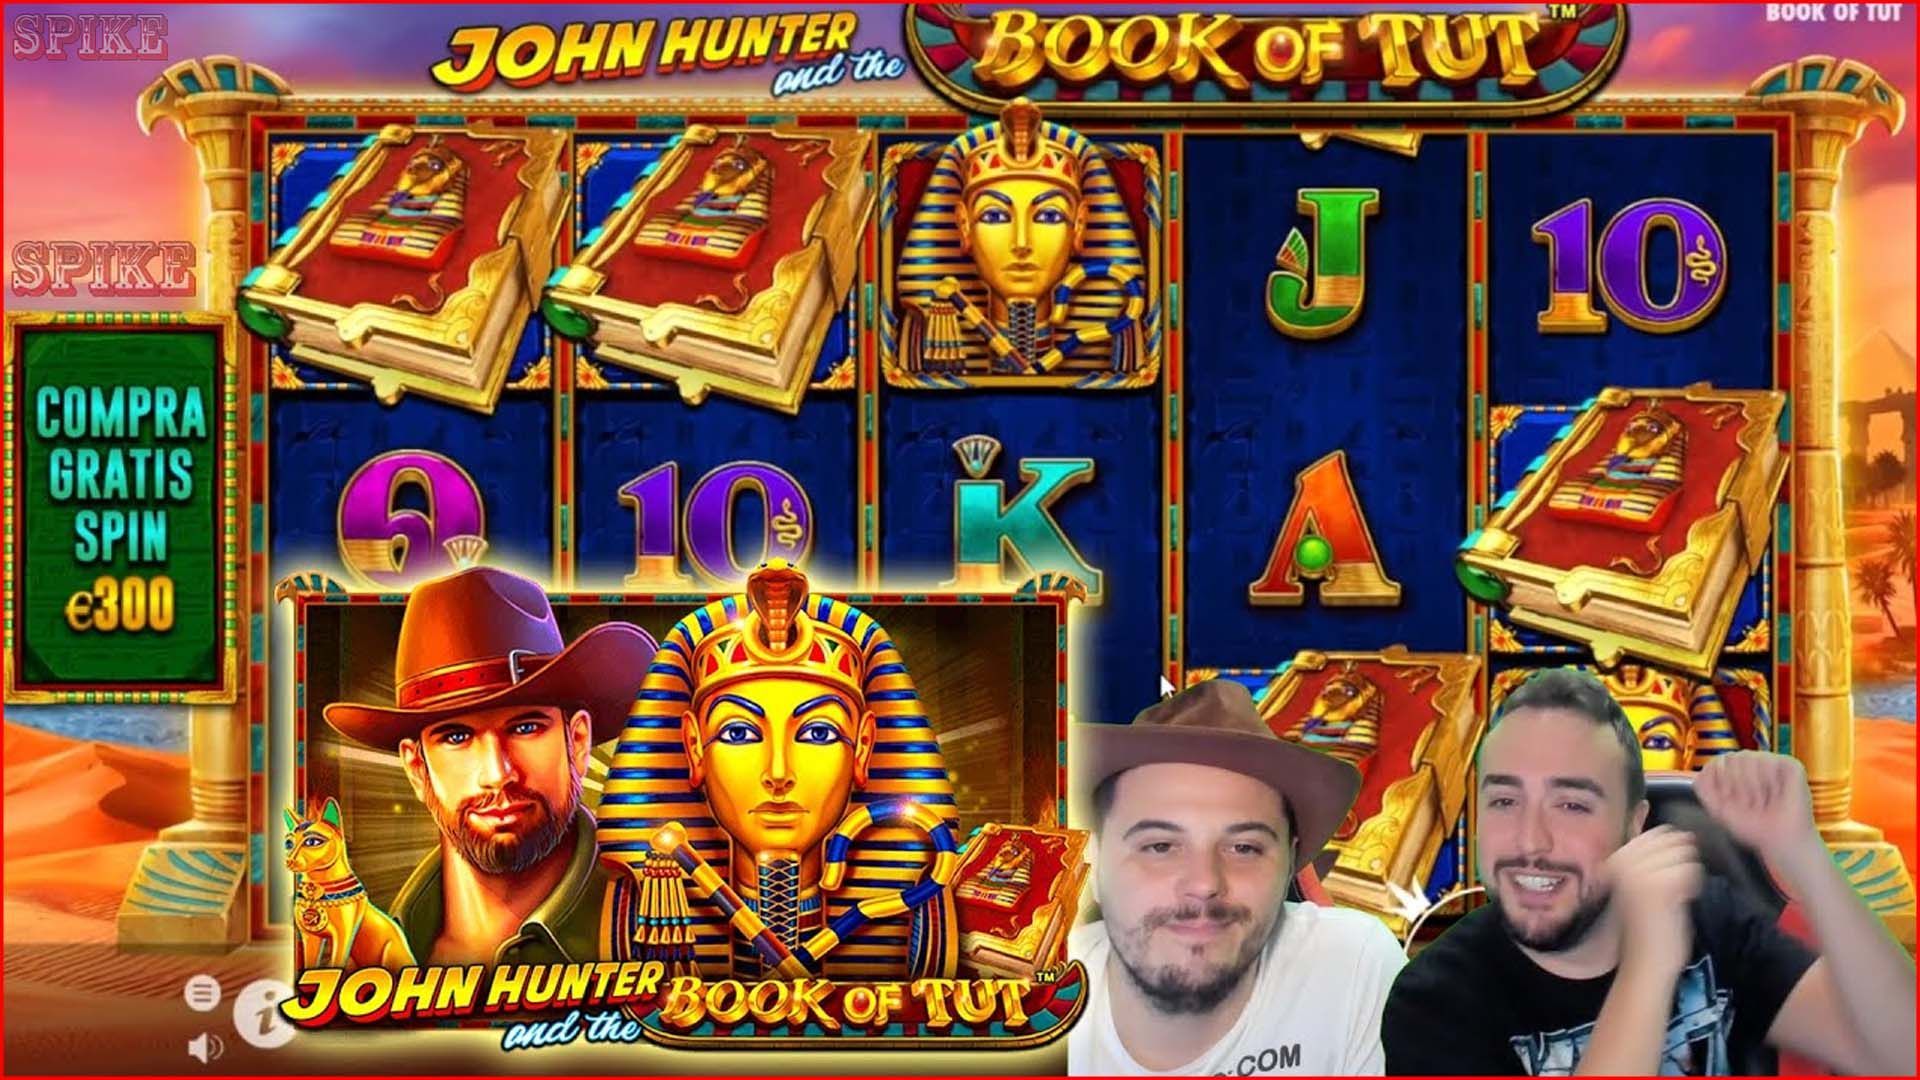 The Book Of Tut